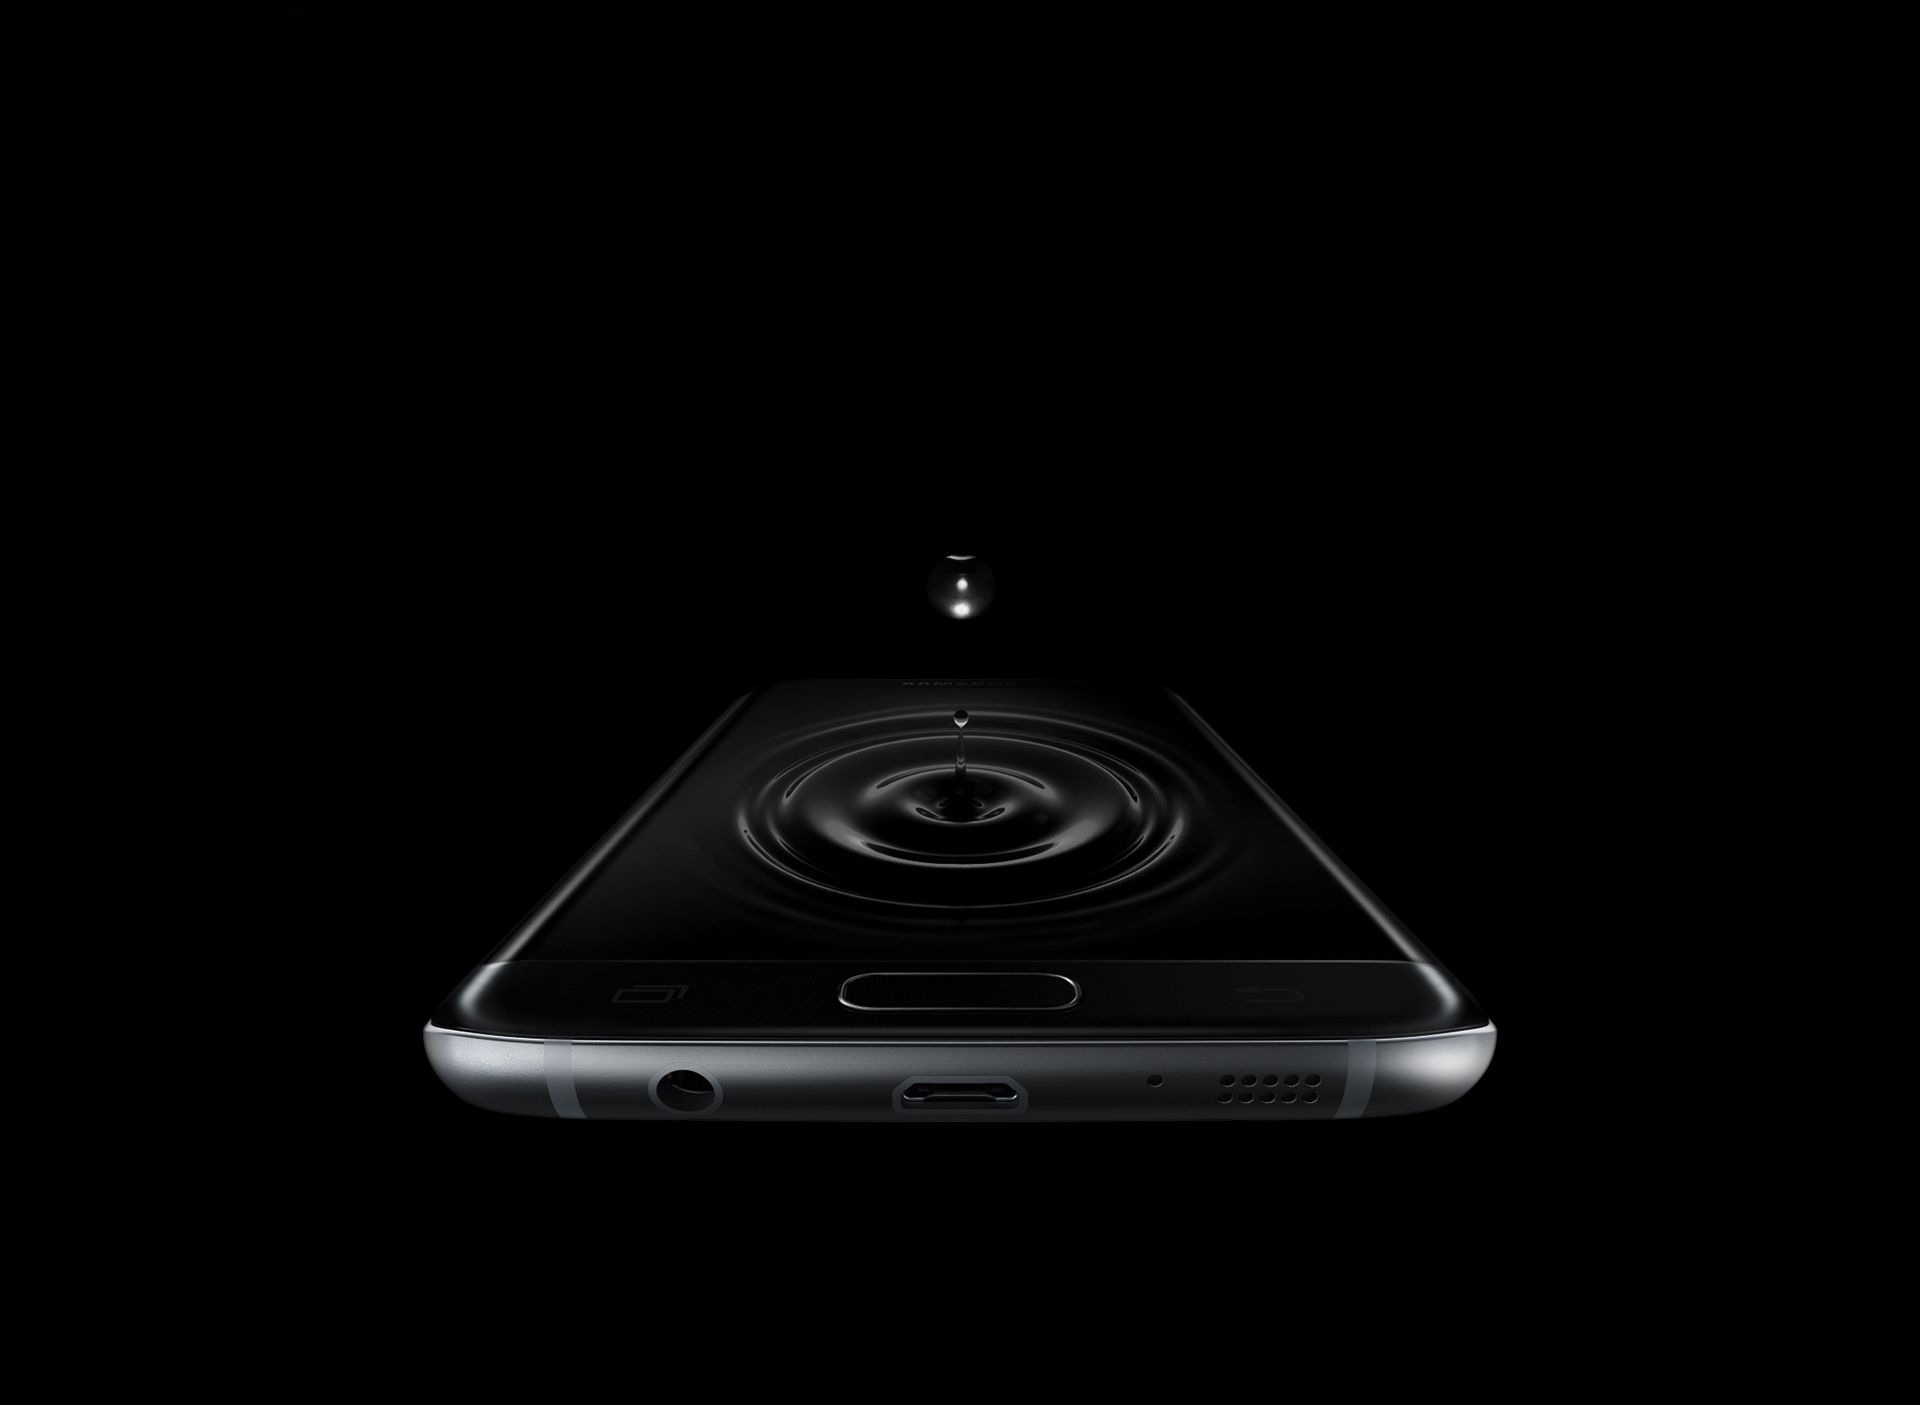 تصویری شبیه‌سازی‌شده از ریزش آب روی صفحه Galaxy S7